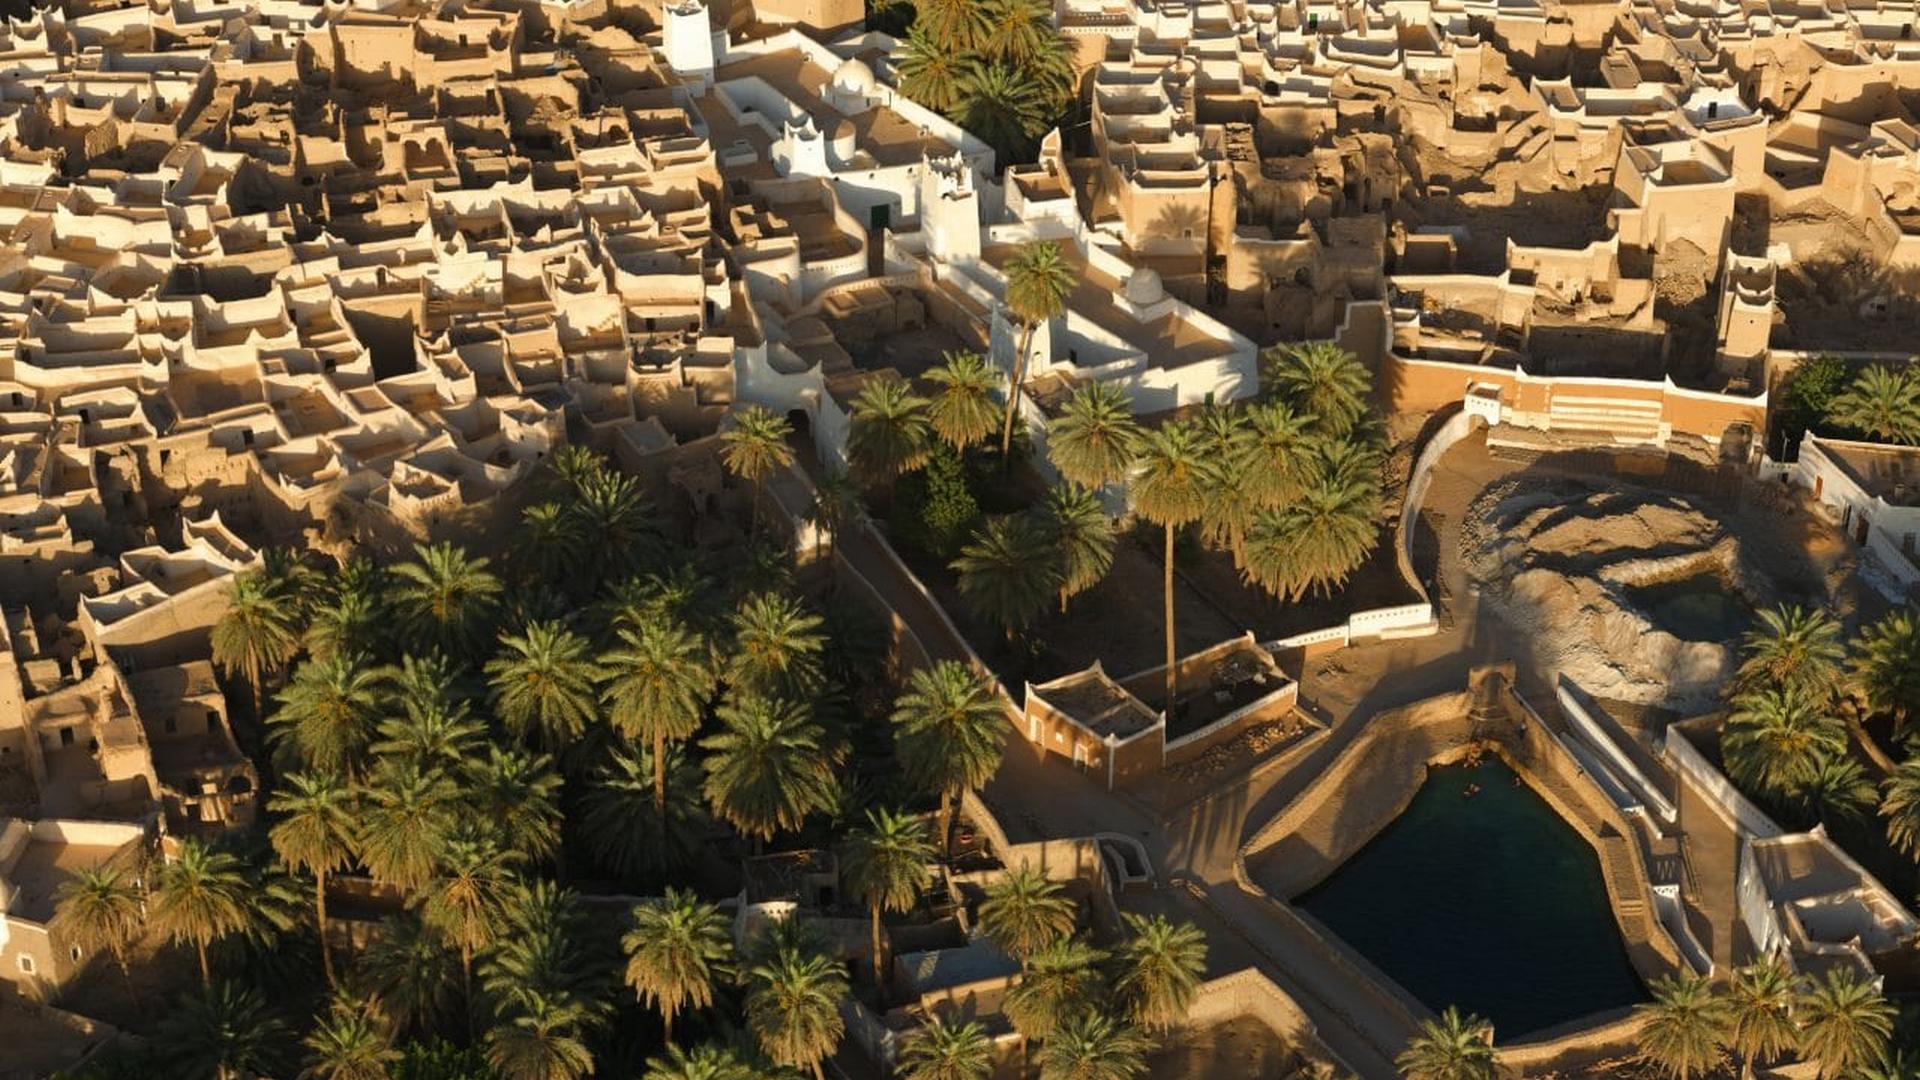 A Cidade Velha de Ghadames, na Líbia, é um exemplo de configuração primitiva de malha urbana, com construções agrupadas que favorecem o adensamento. Fonte: Islamic Architectural Heritage